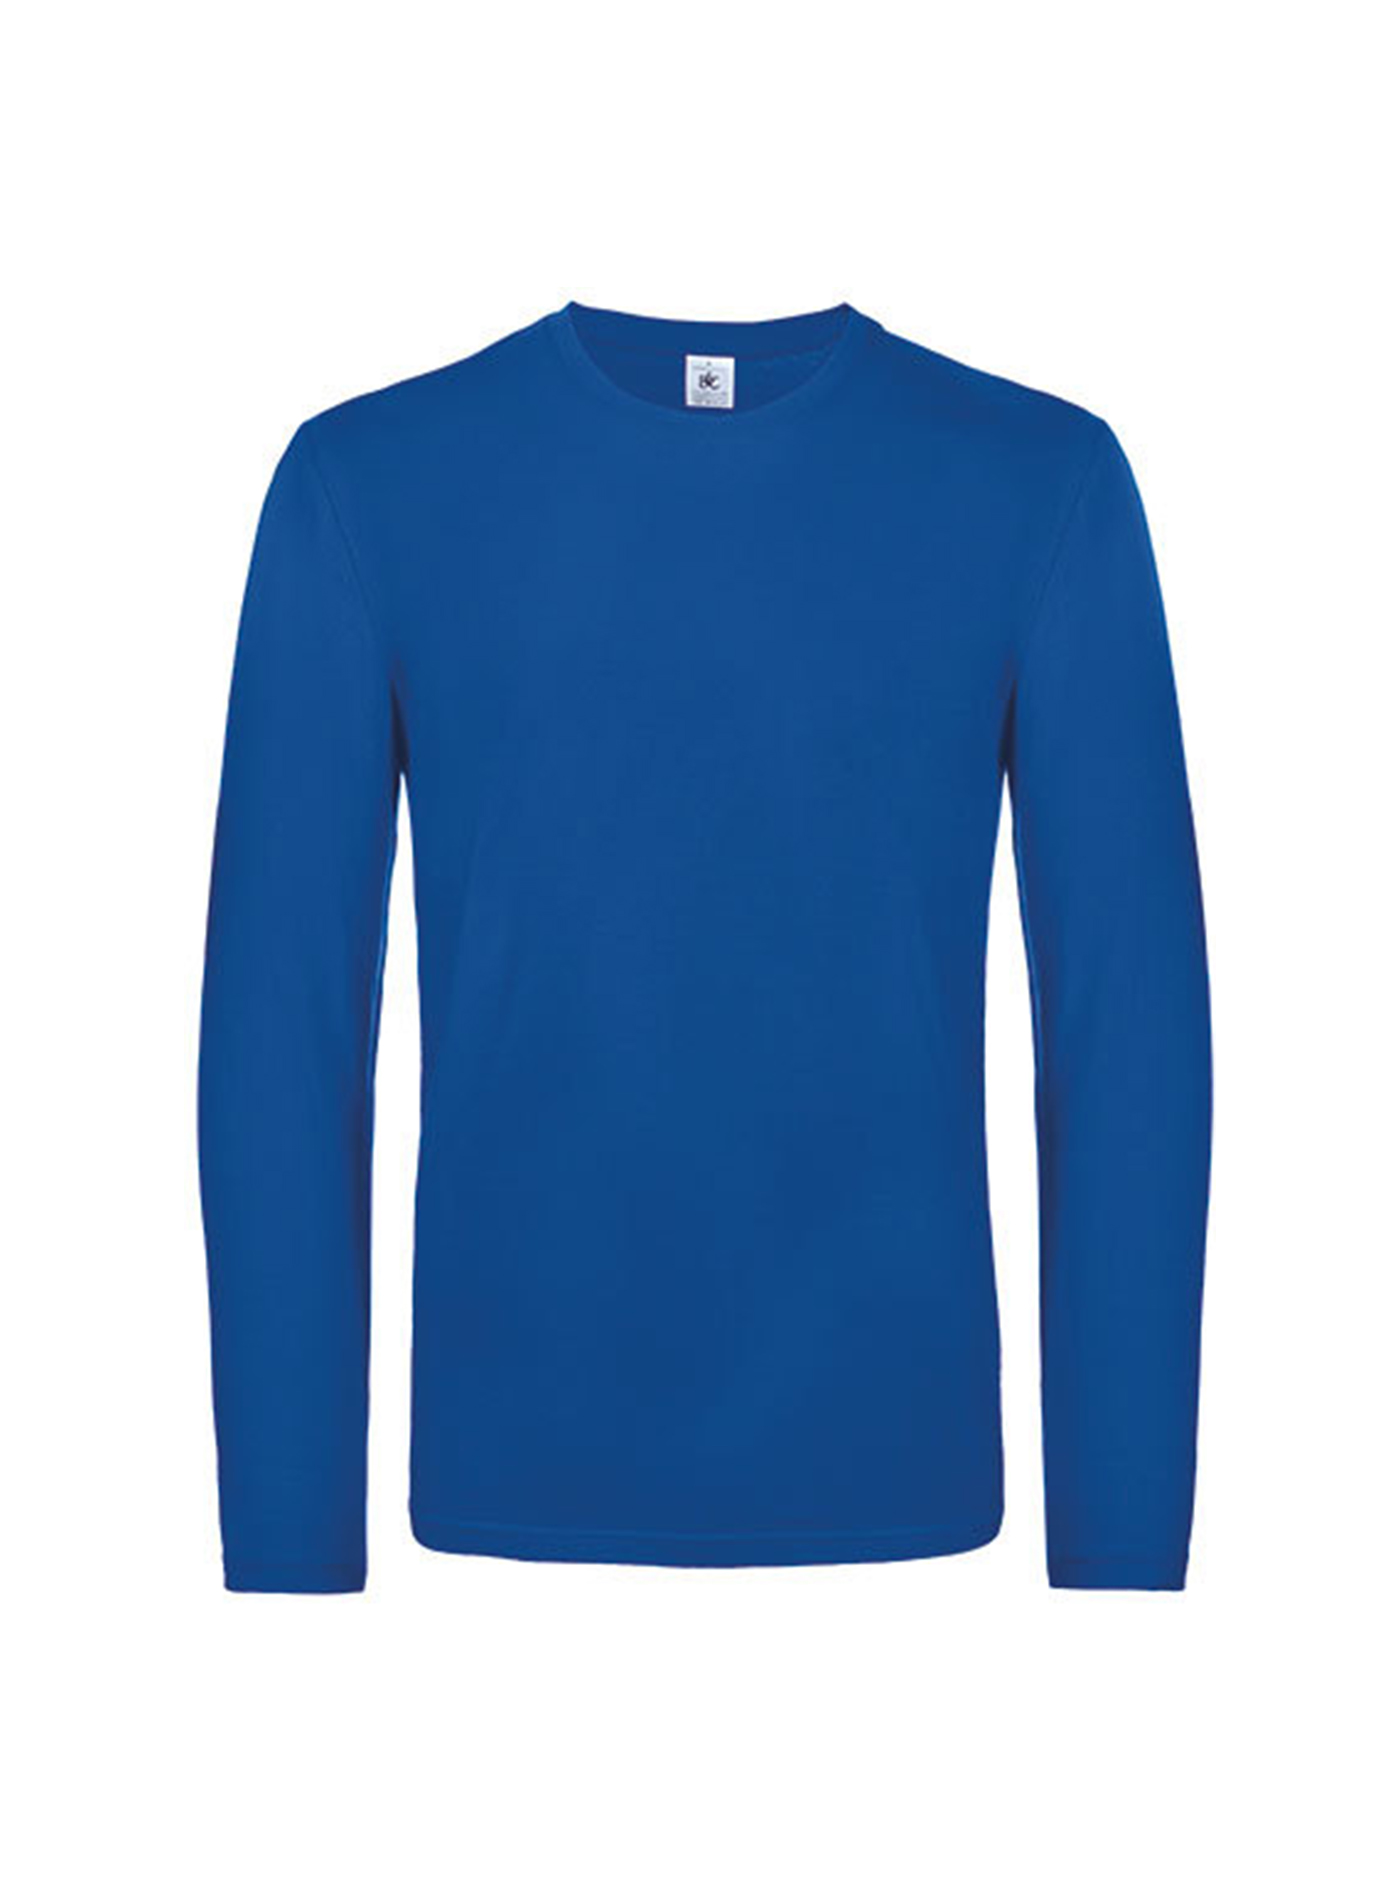 Pánské tričko s dlouhým rukávem B&C Collection - Královská modrá XL